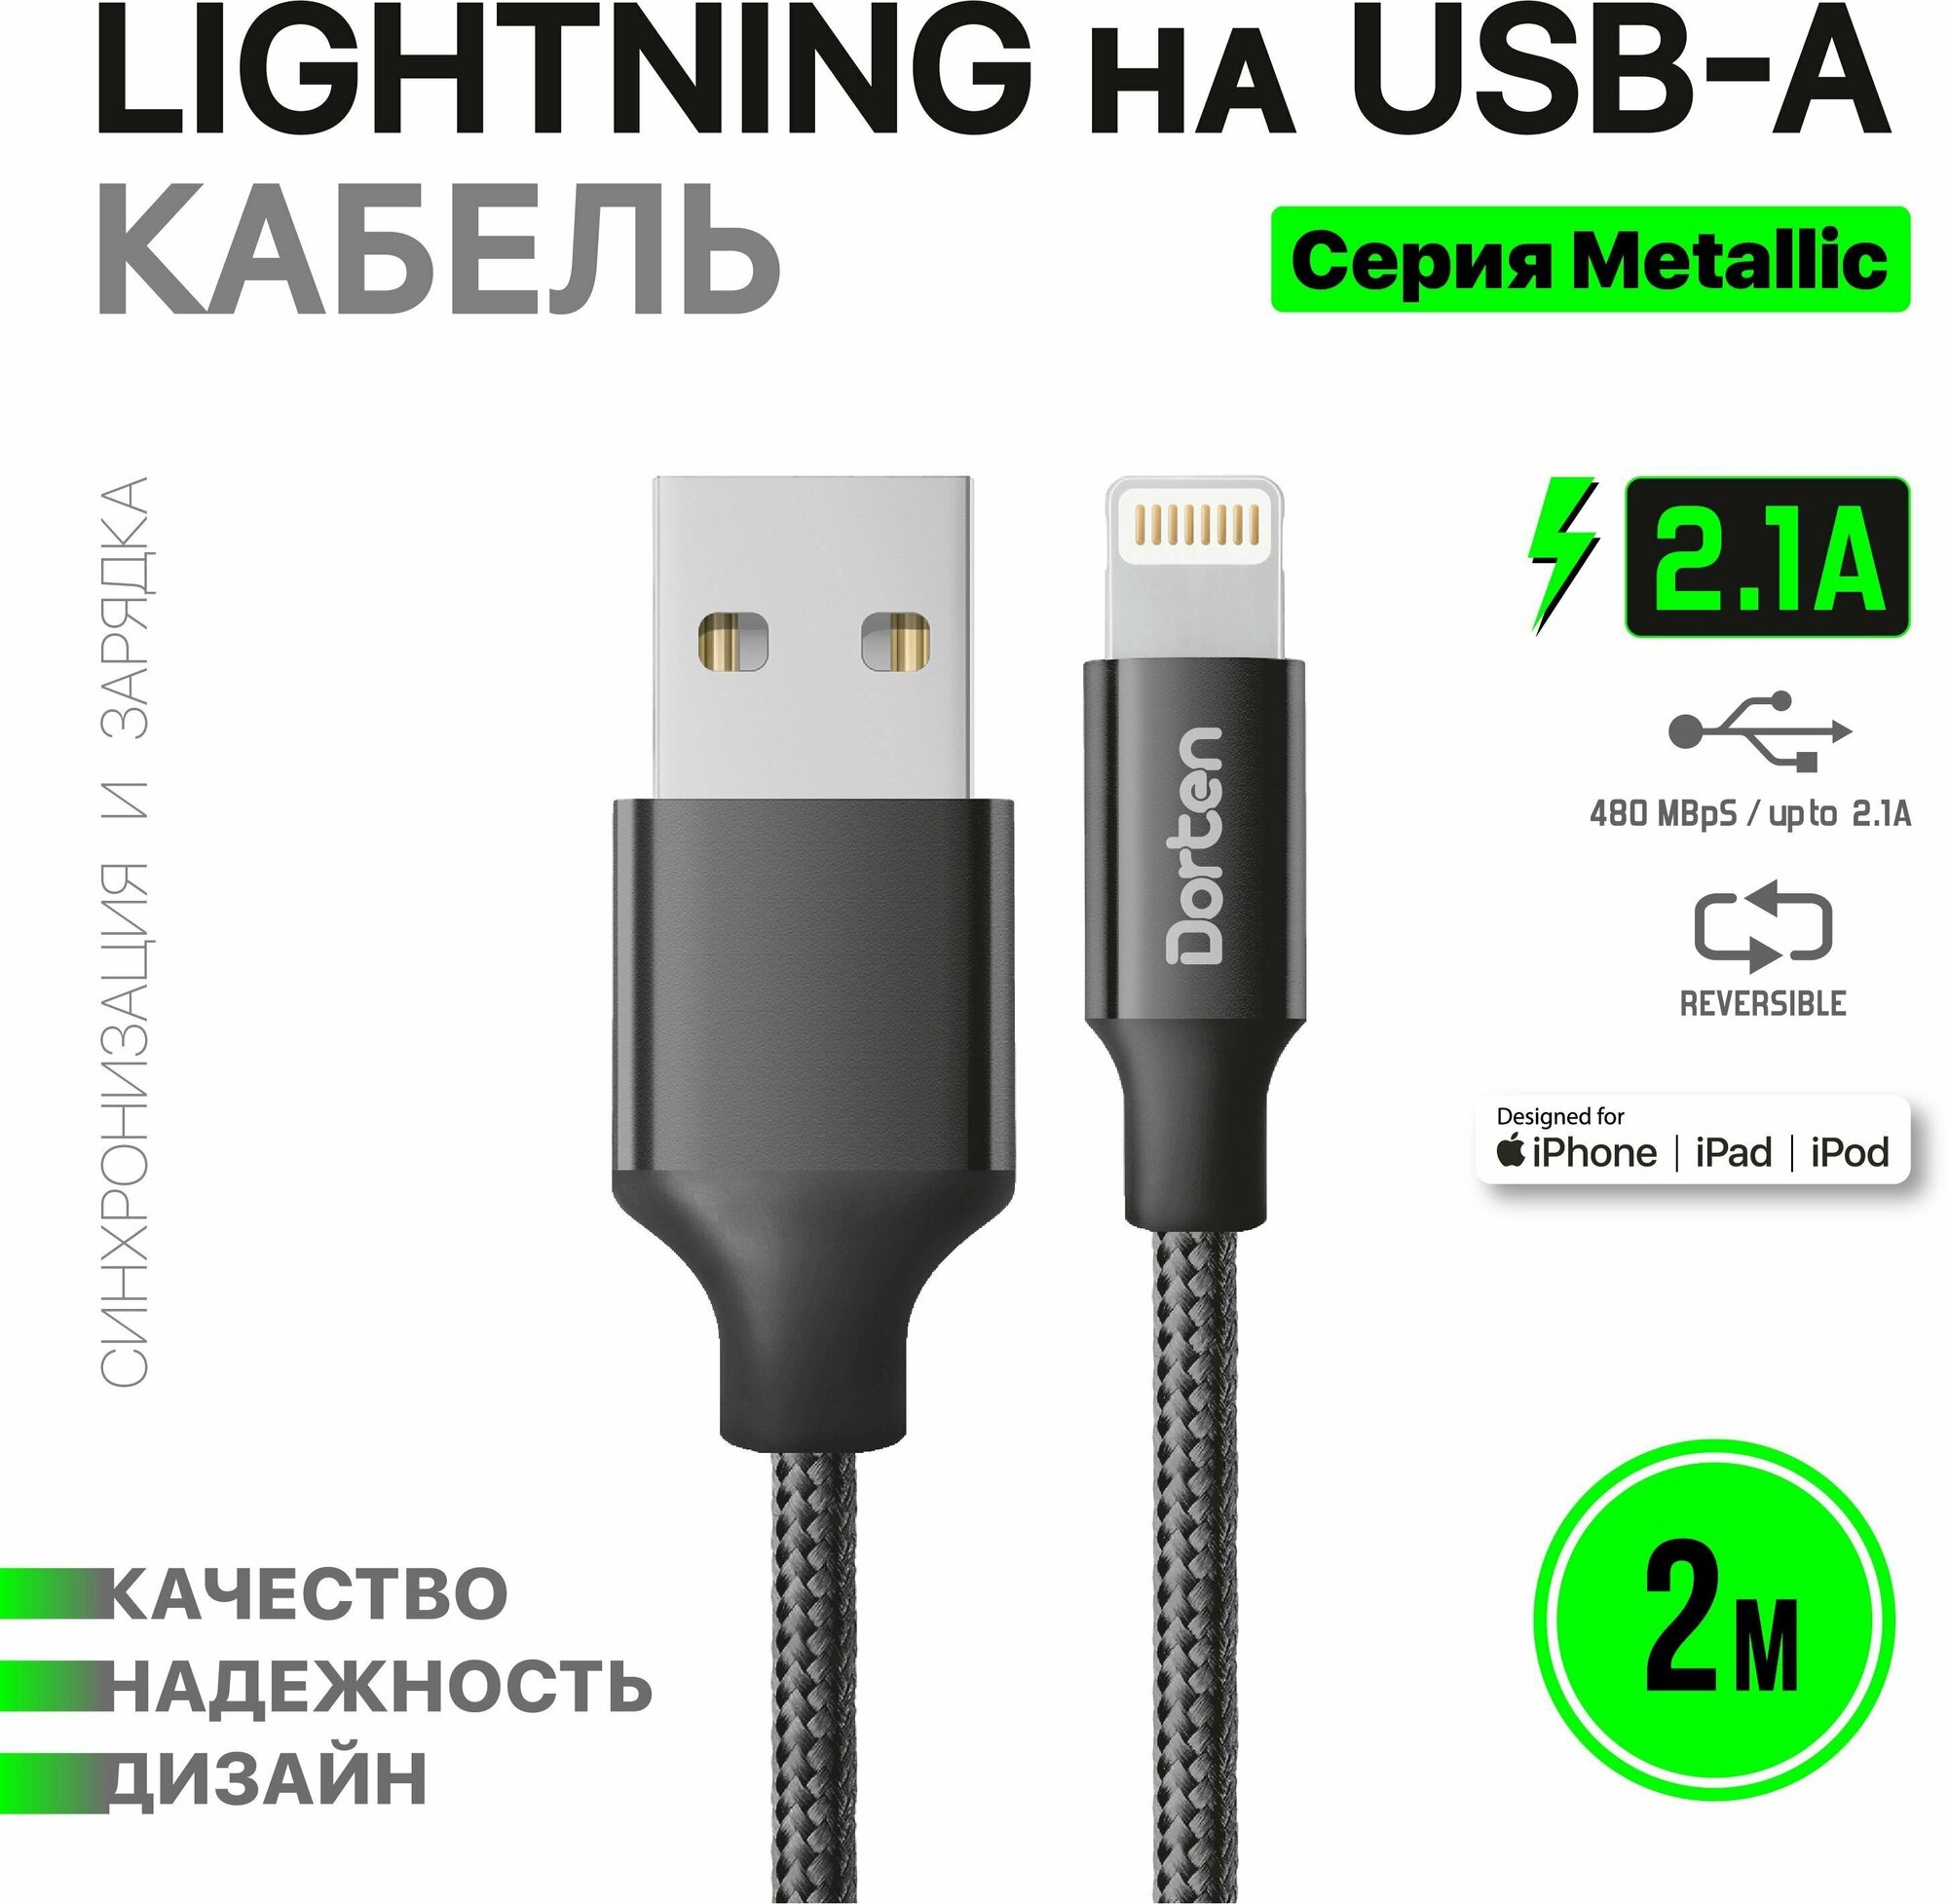 Кабель USB для зарядки телефона Dorten Lighting 2 метра: Metallic series провод юсб 2м - Черный